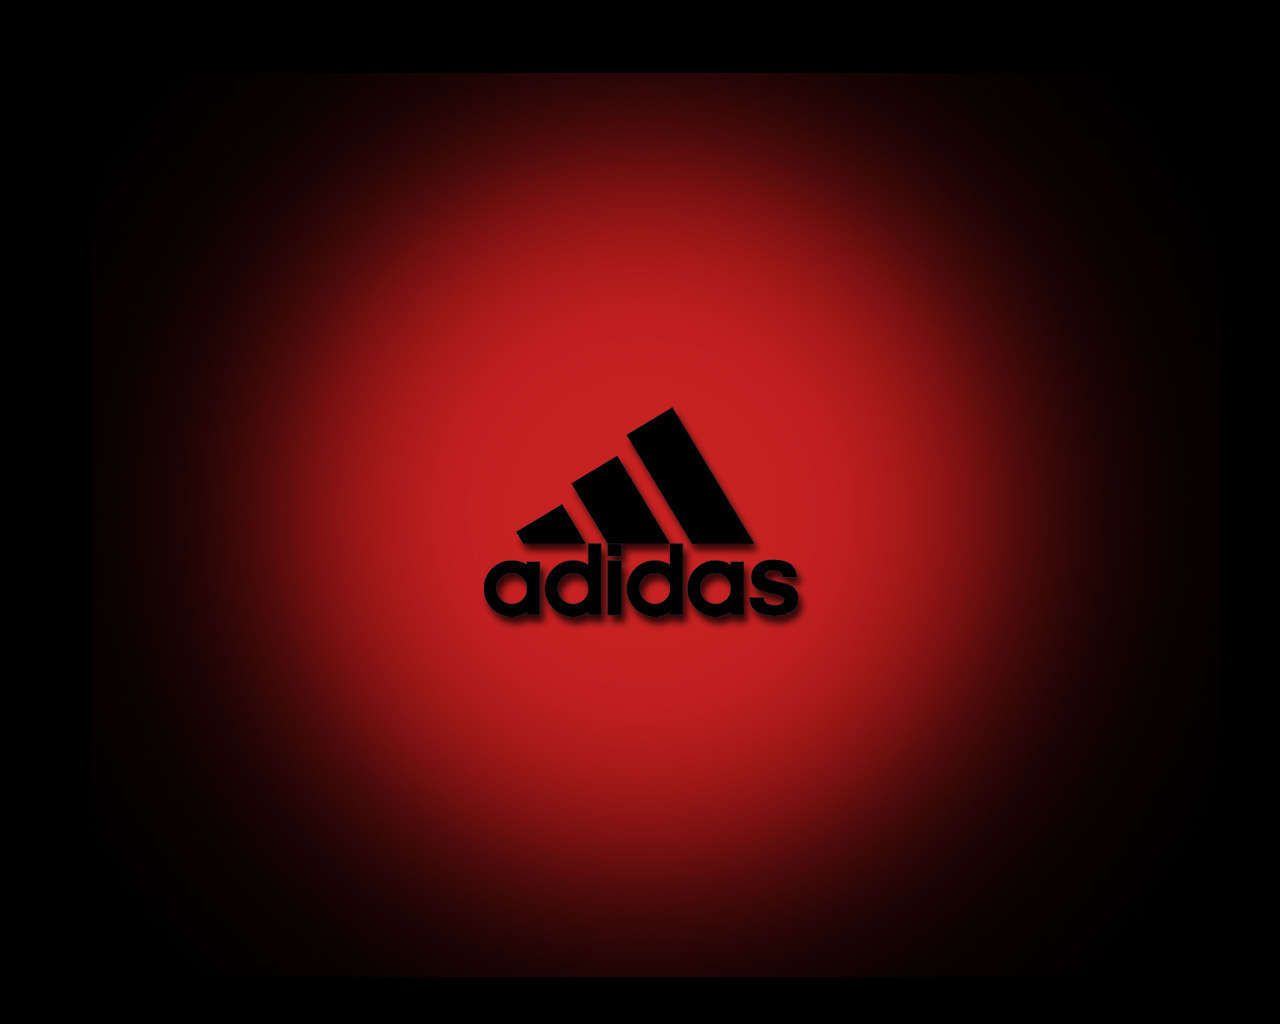 Фотография адидас. Адидас. Логотип адидас. Adidas обои. Адидас на Красном фоне.